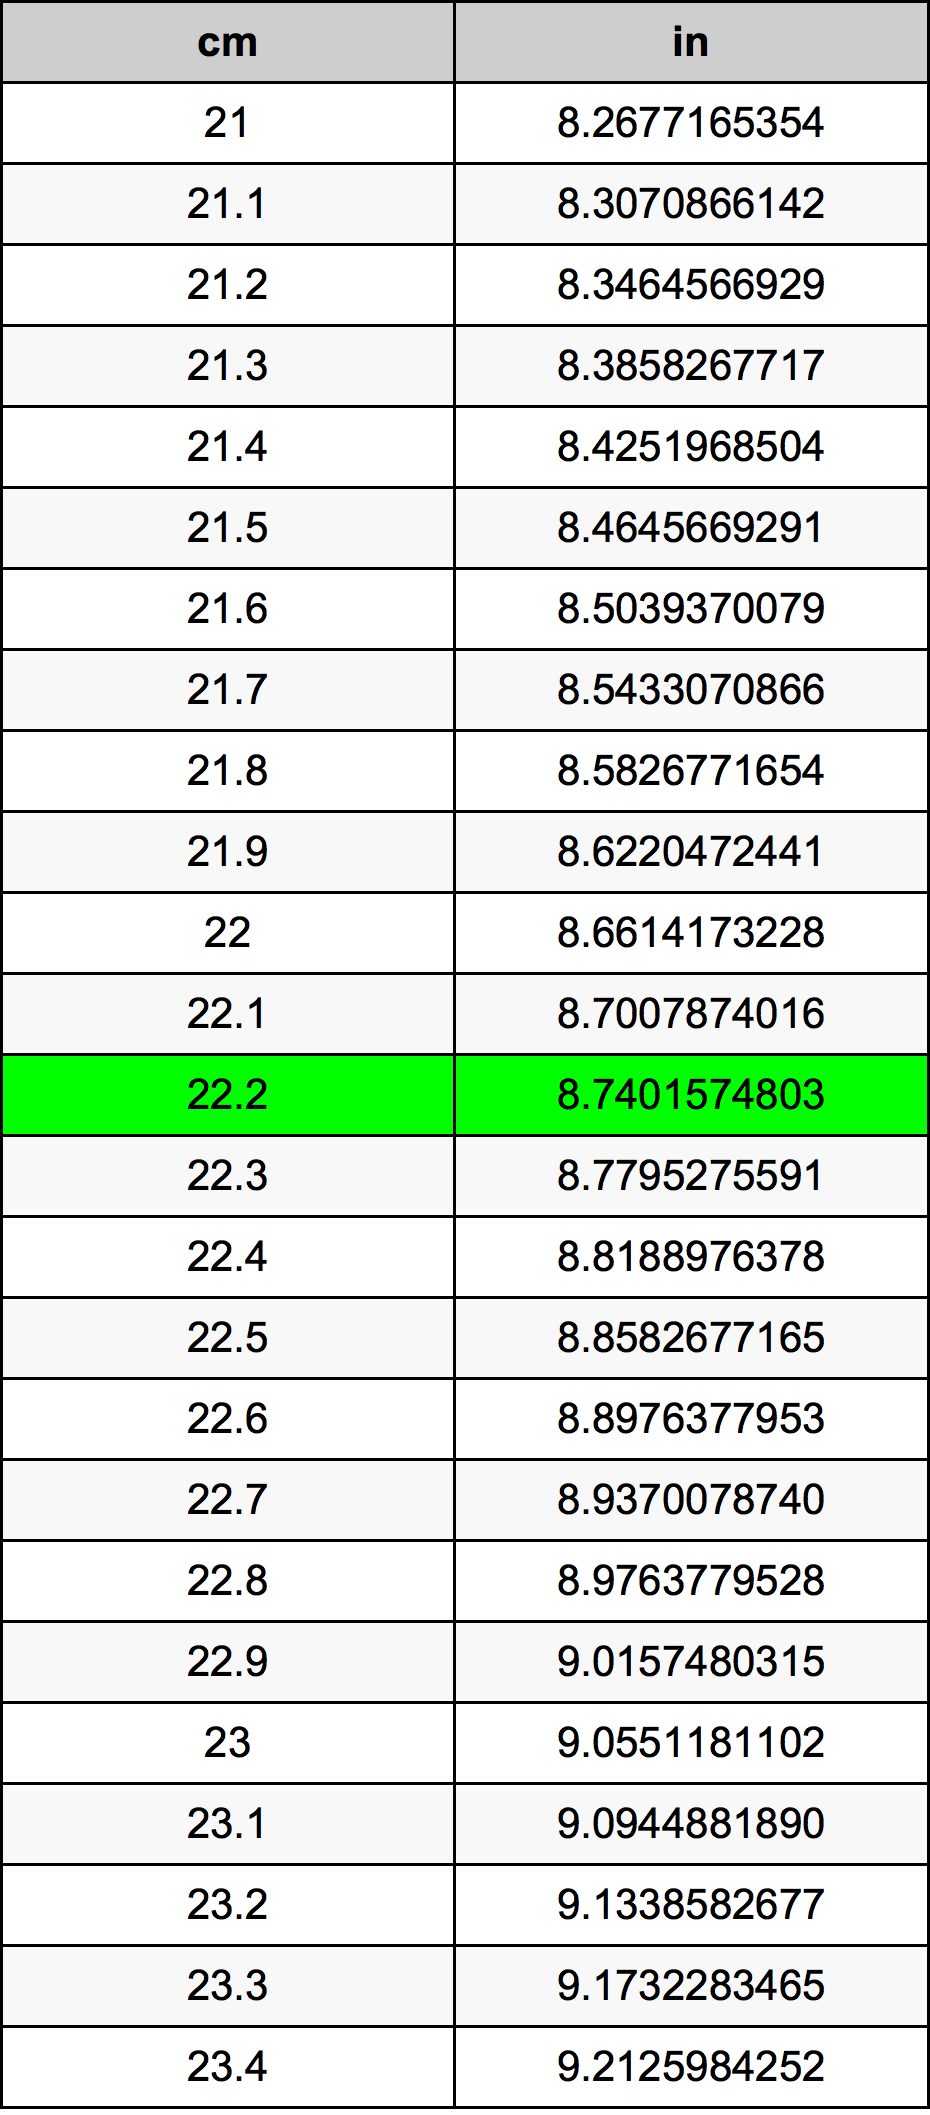 22.2 Centiméter átszámítási táblázat